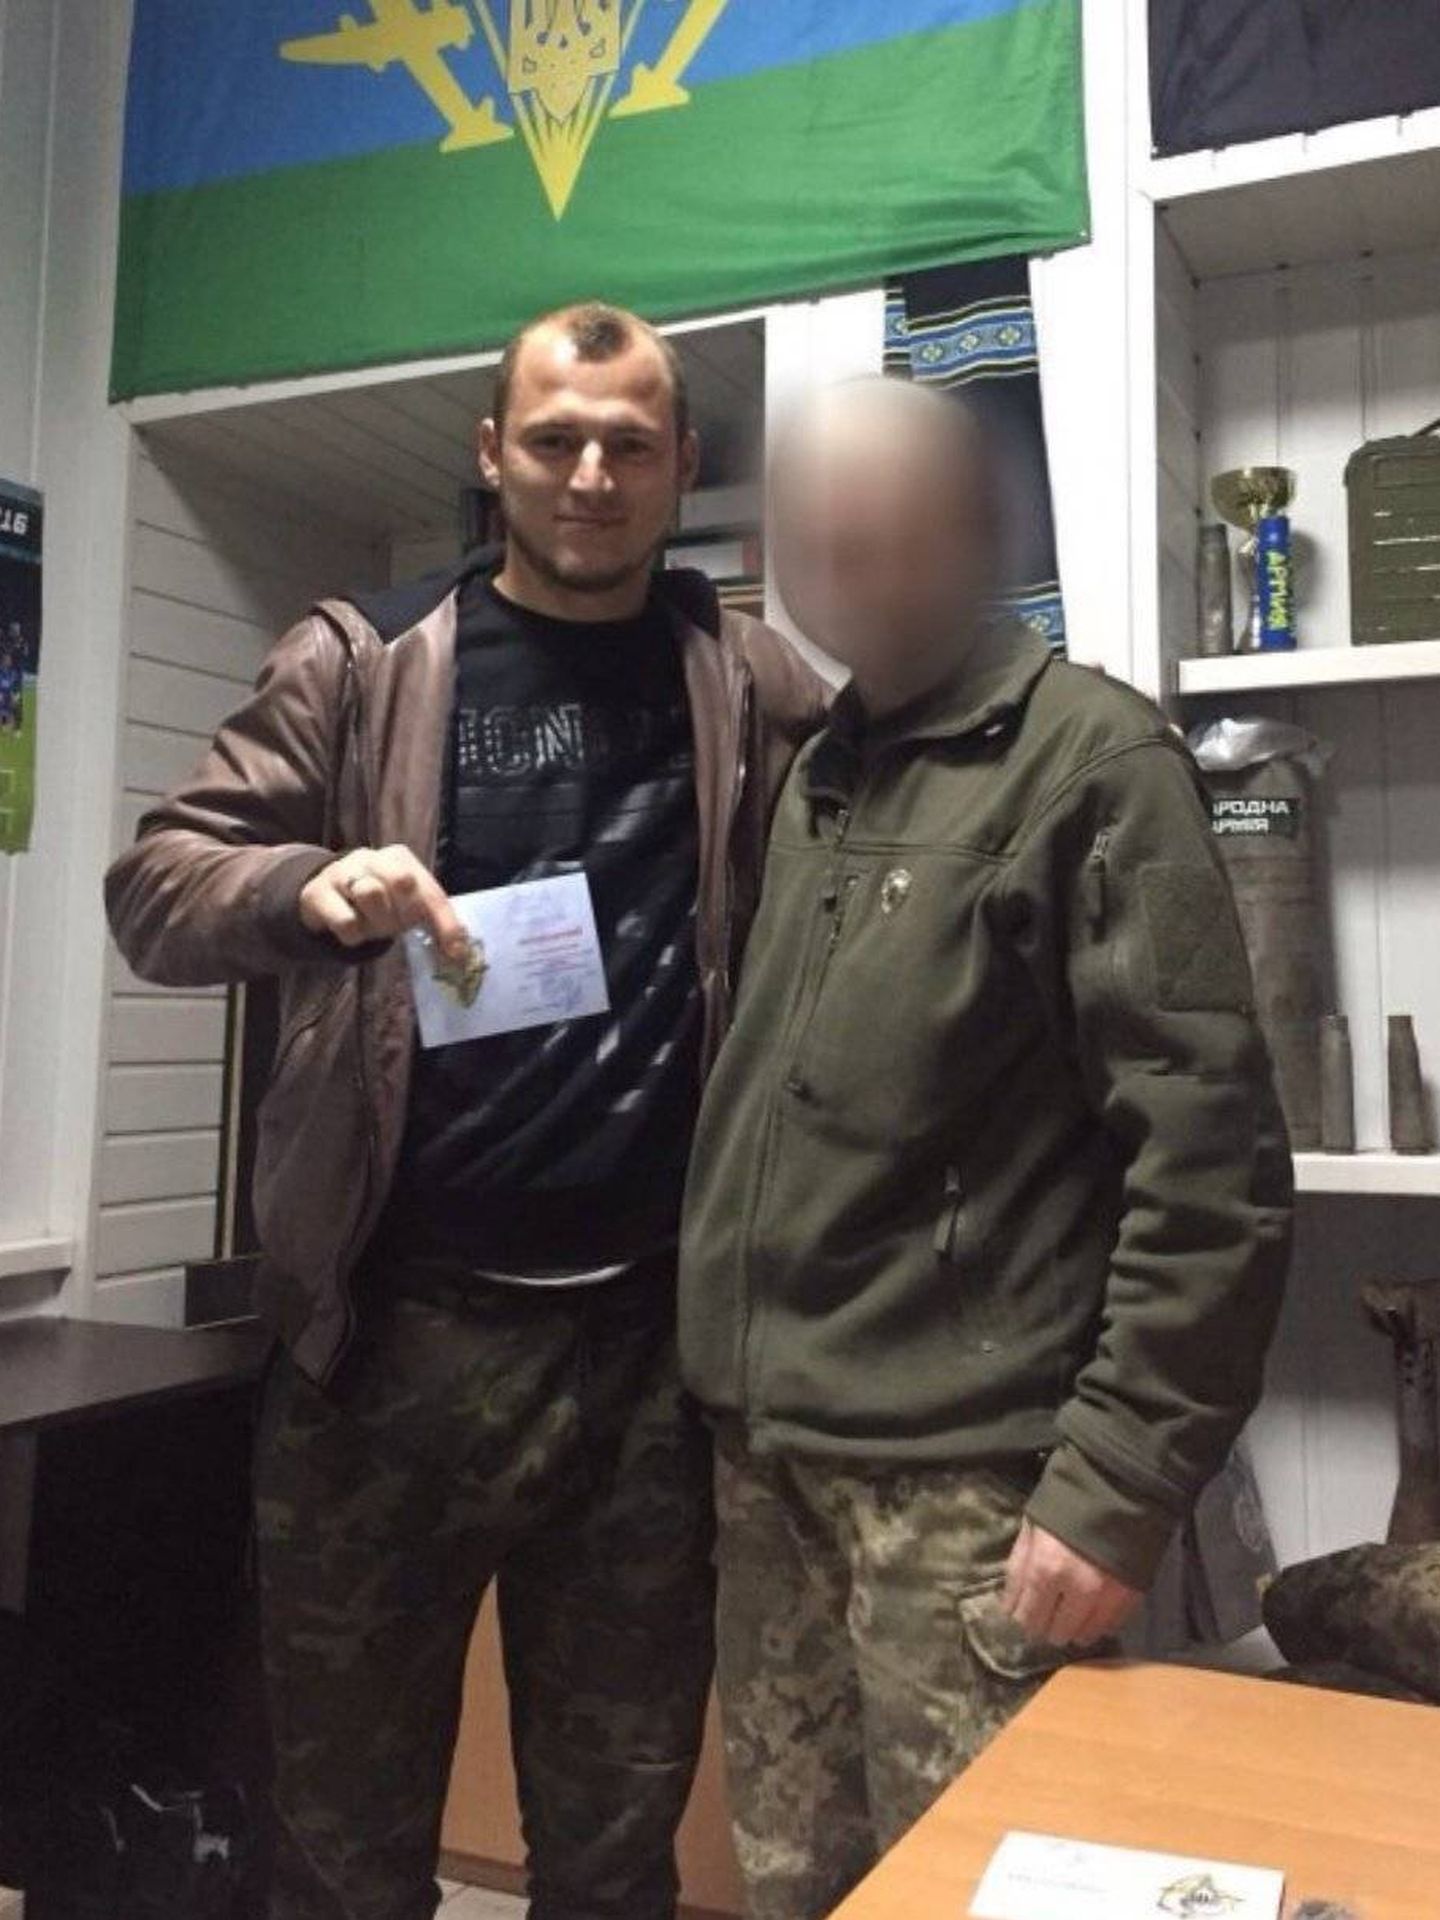 Zozulya junto a un compañero y la bandera de las fuerzas aeromóviles del ejército ucraniano.